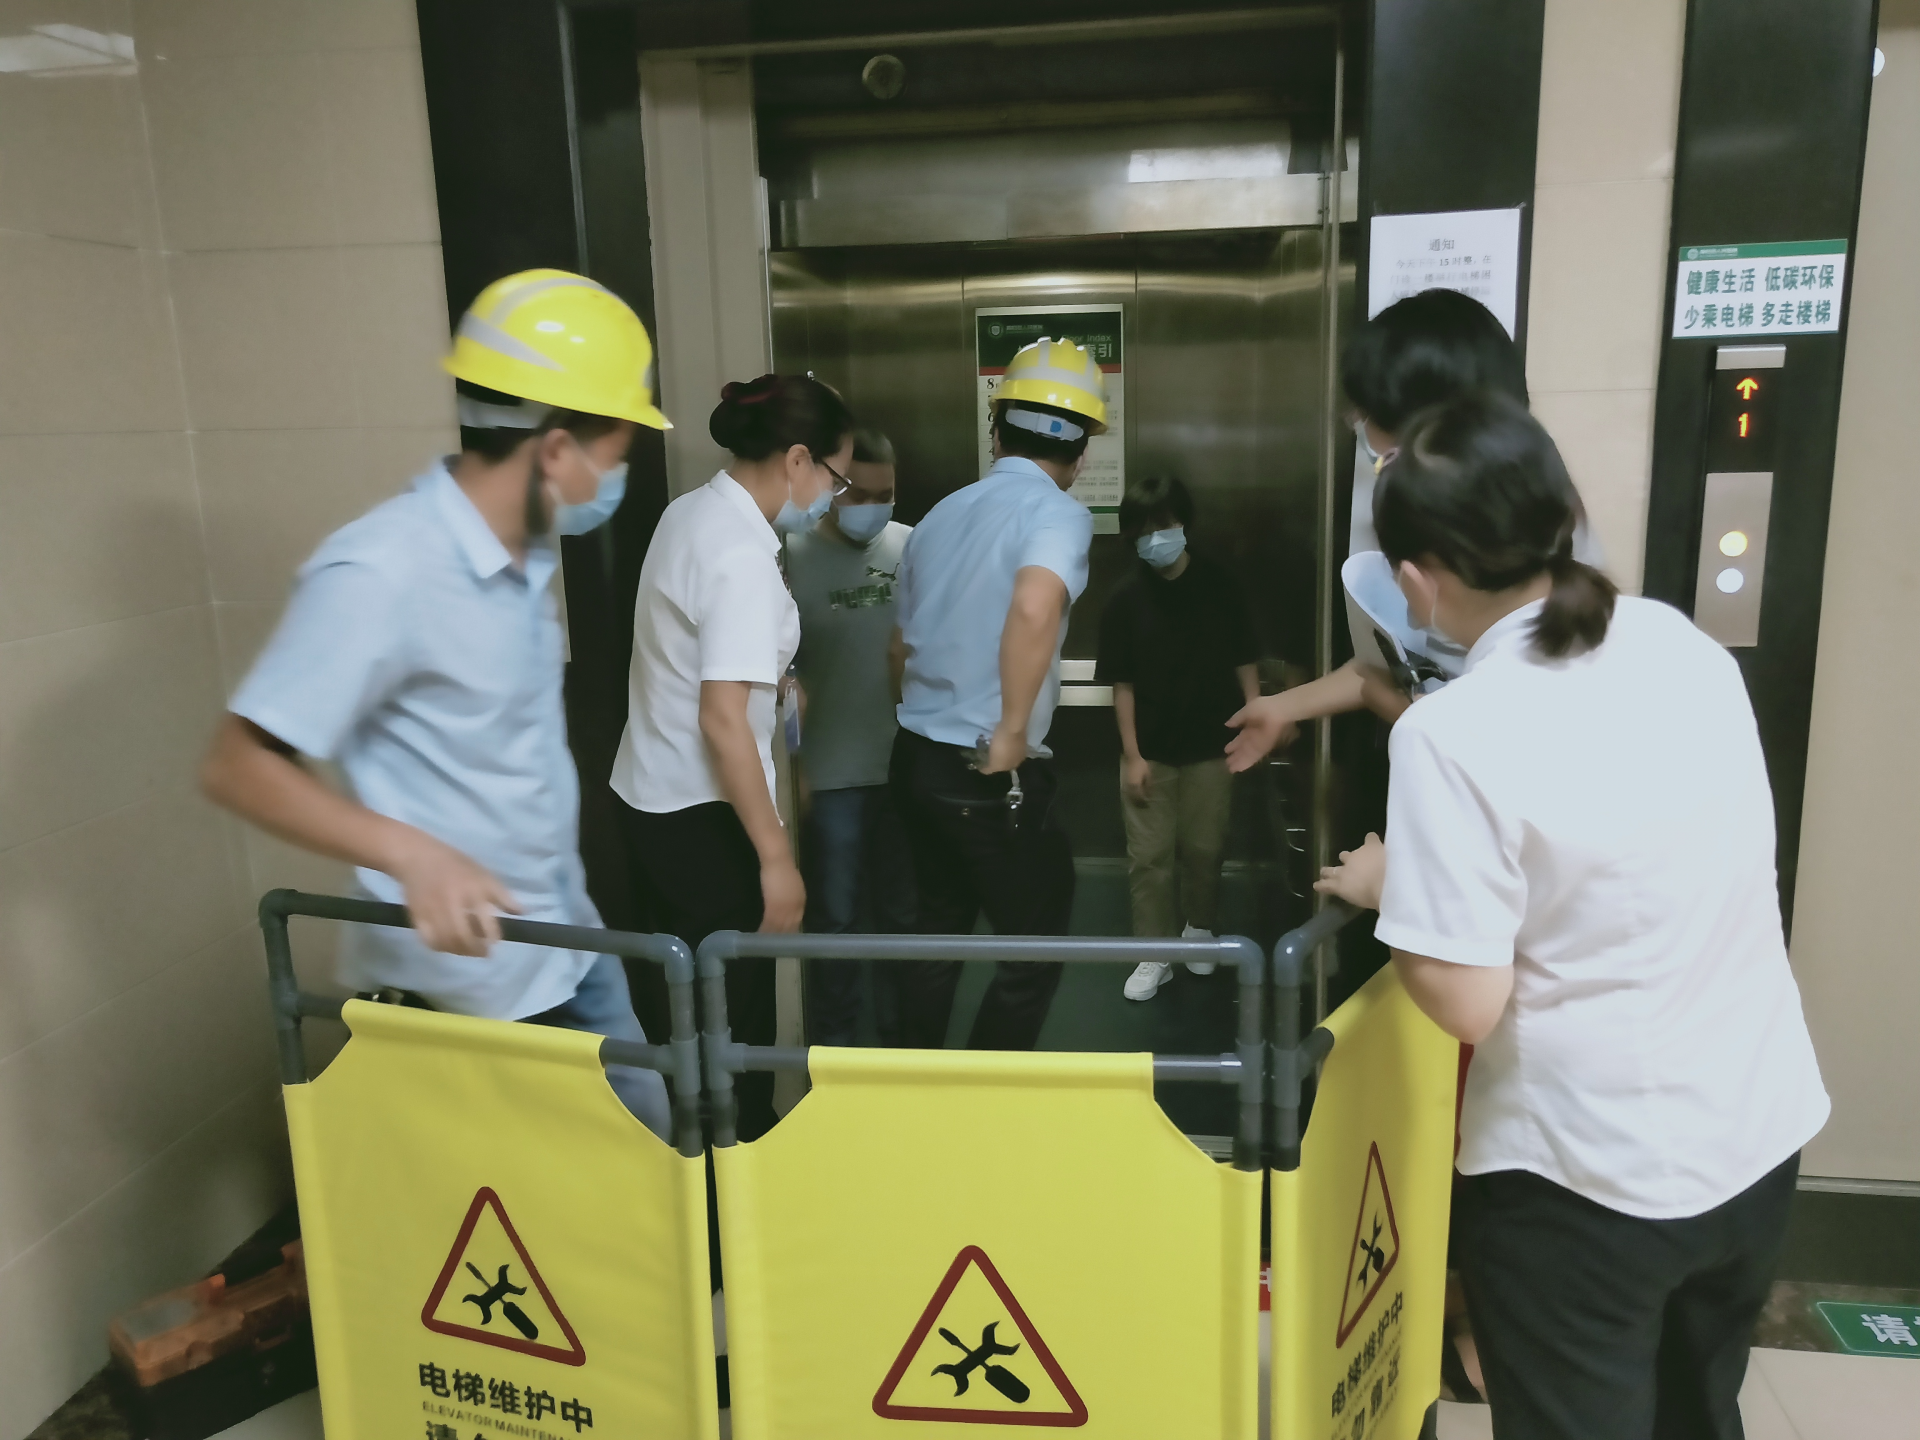 此次应急救援演练的开展,进一步完善了医院电梯应急救援体系,提高了